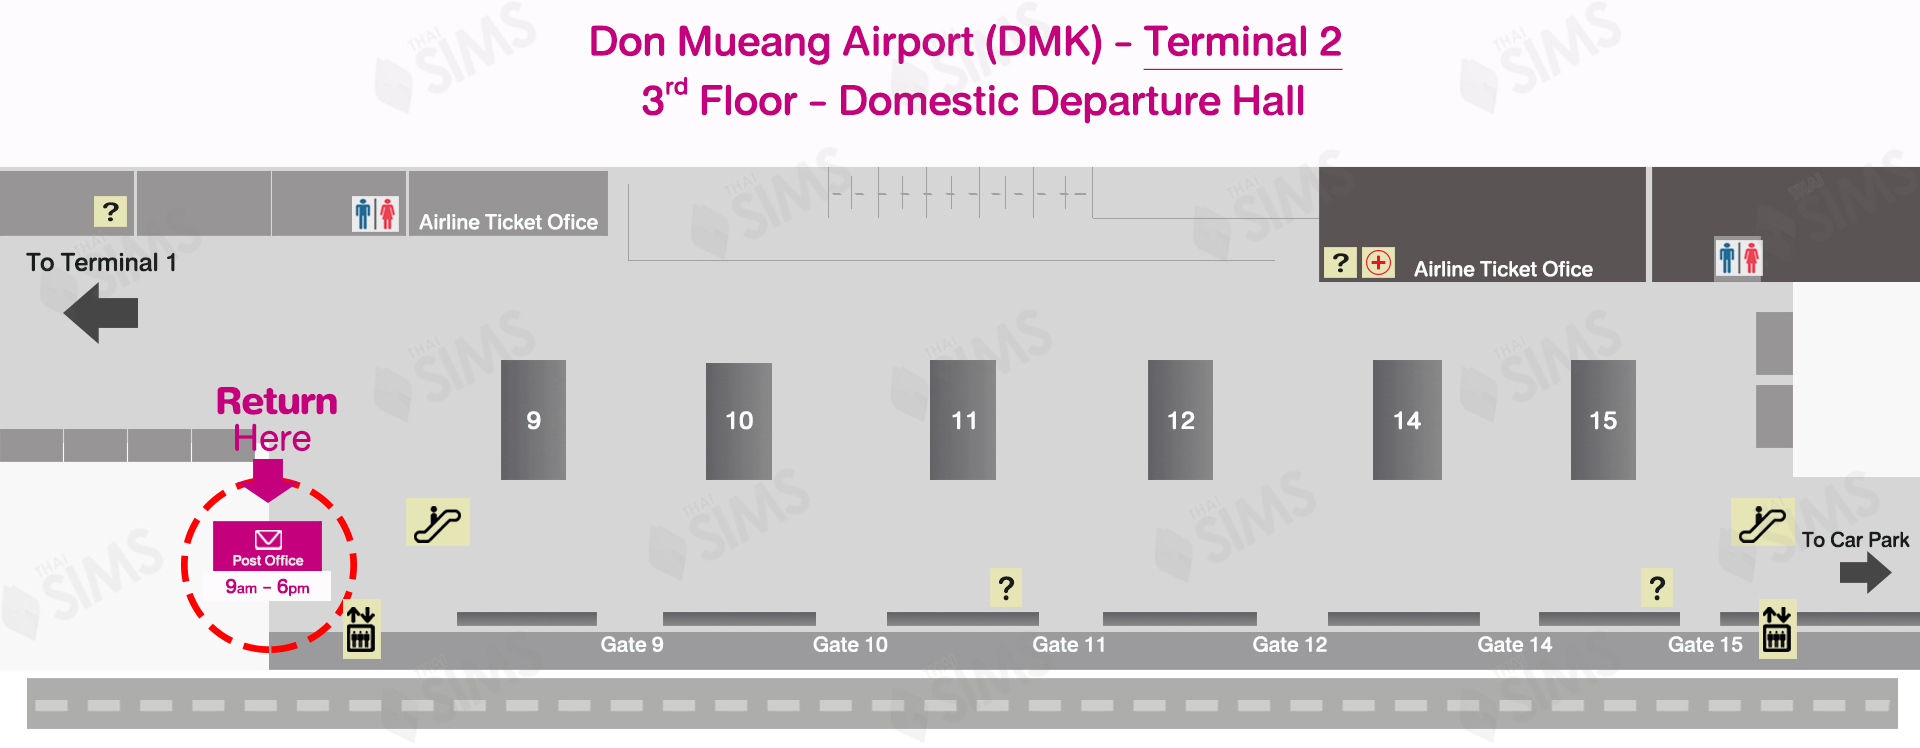 DMK Airport Terminal 2-Return